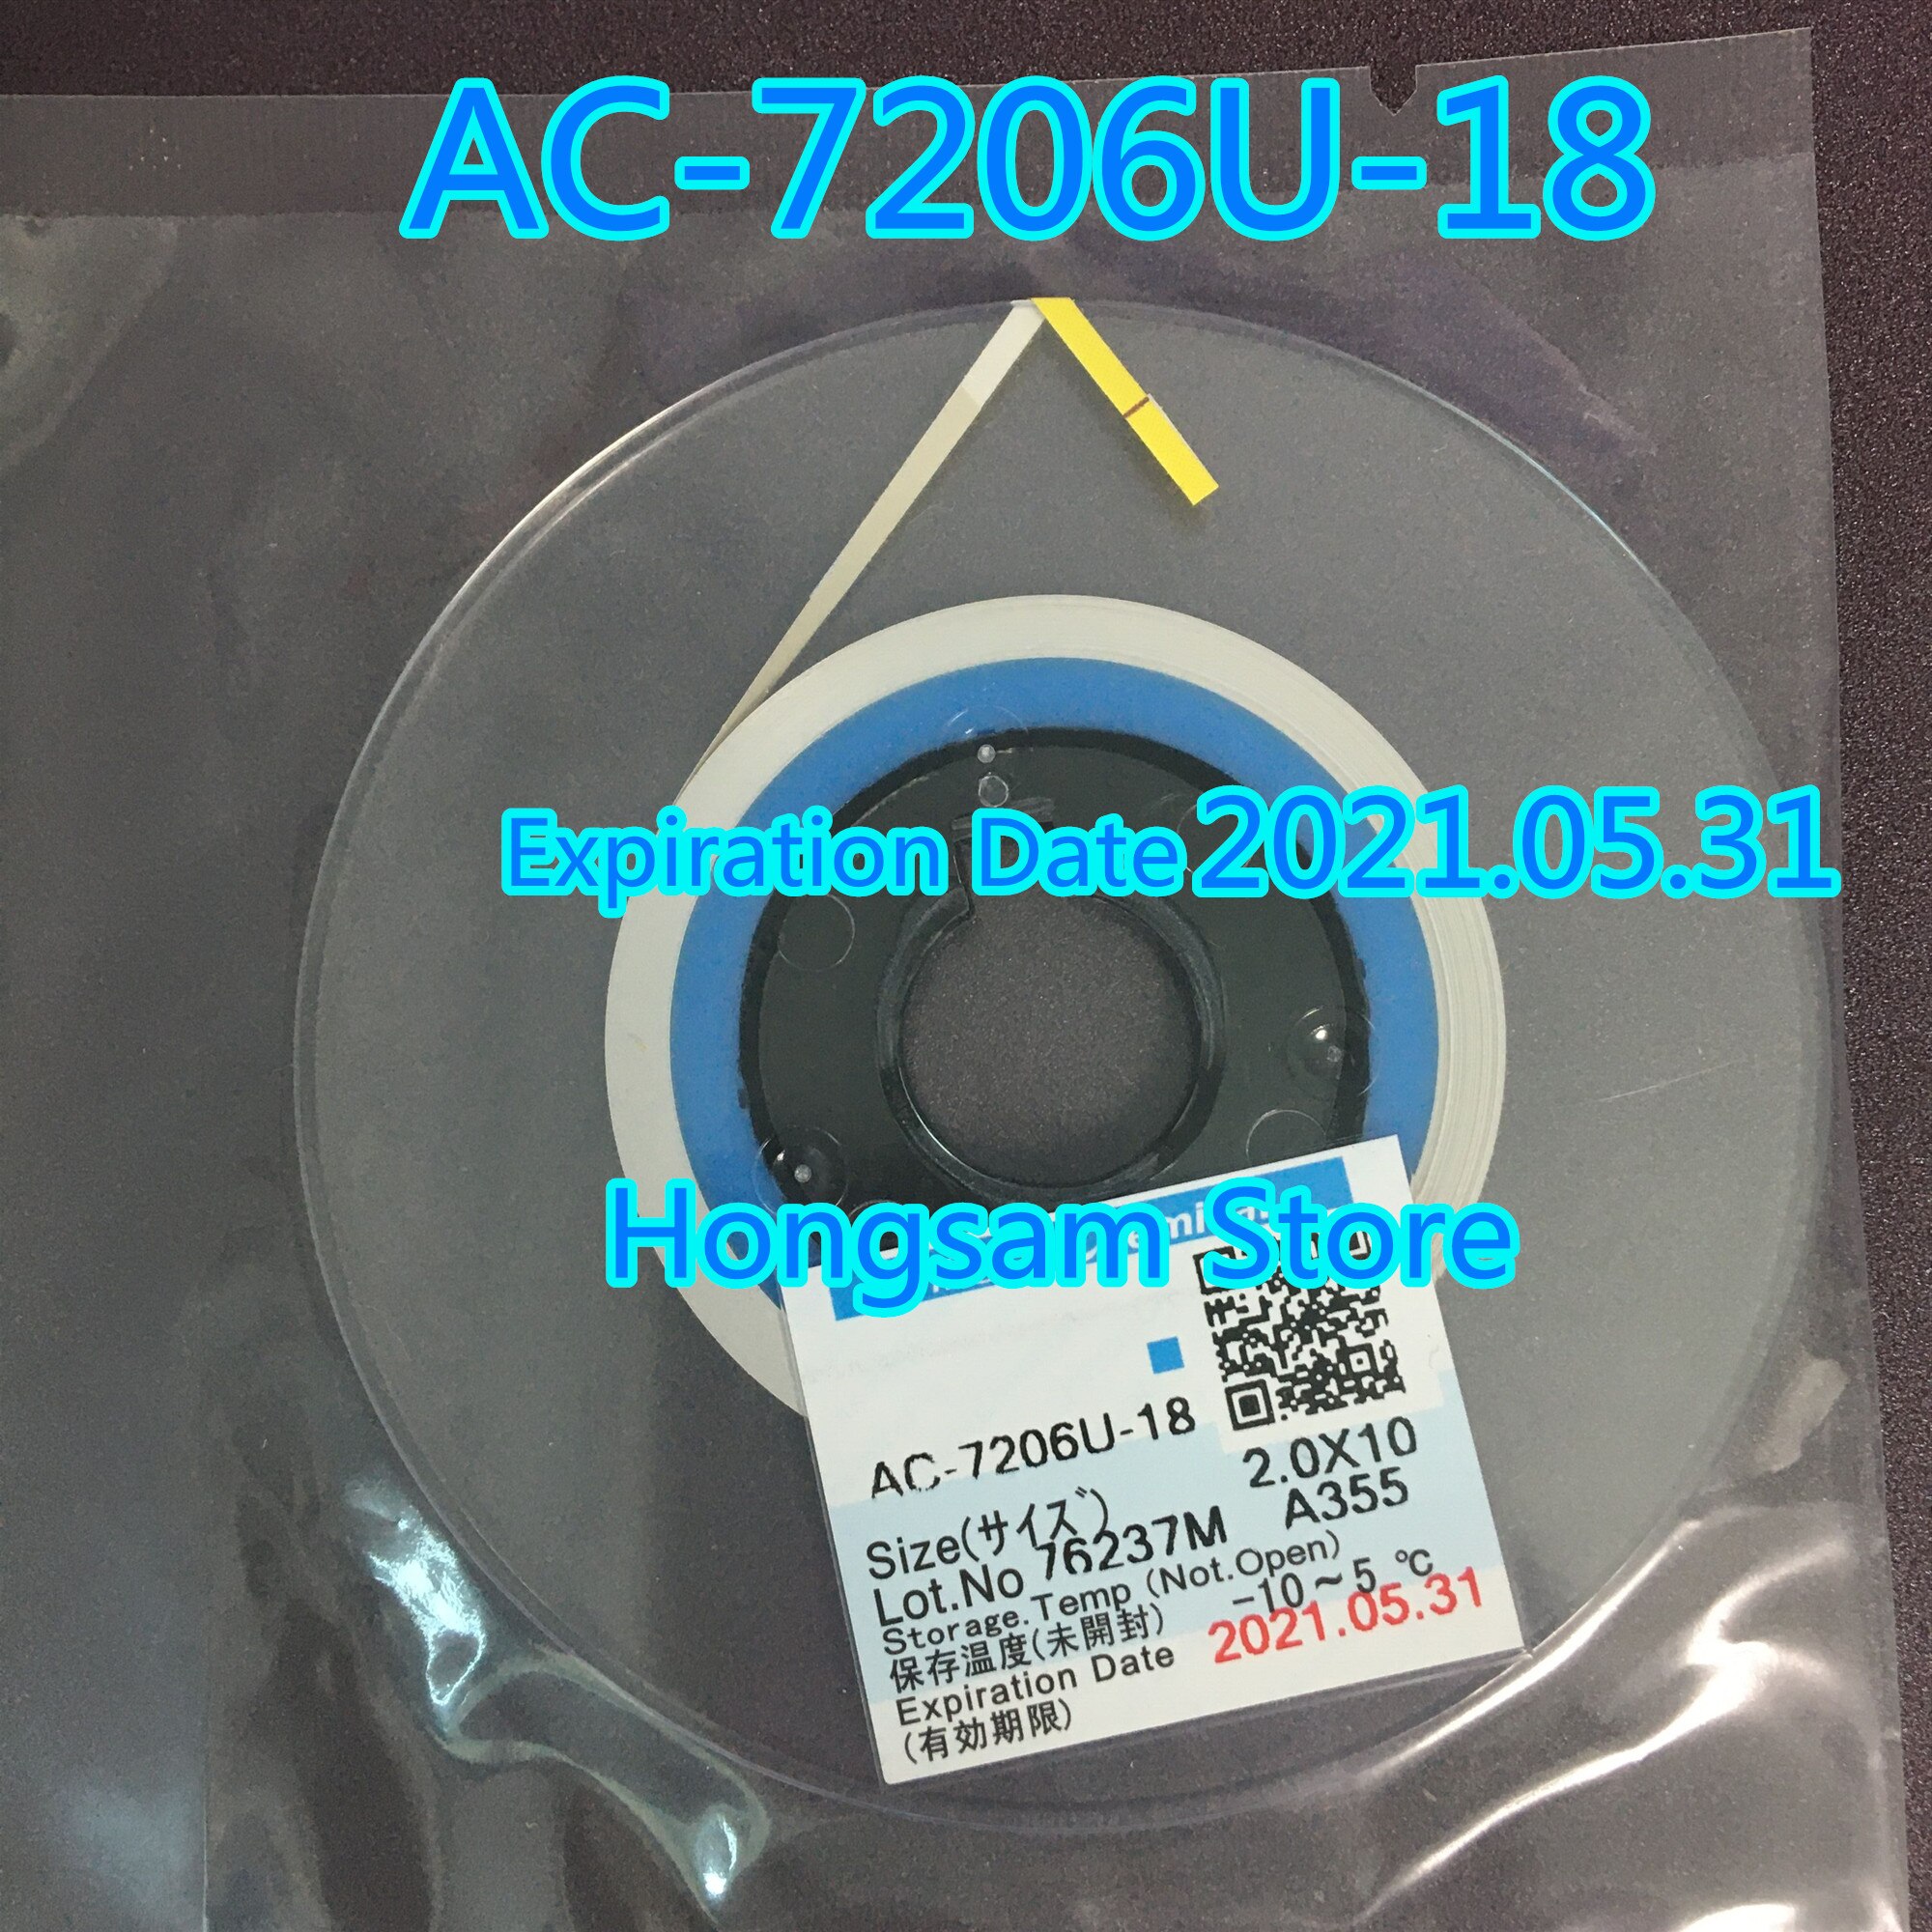 Cinta para reparación de pantalla LCD, AC-7206U-18 ACF 7206U-18, 1,2/1,5/2,0mm x 10m/25m/50m, nueva fecha